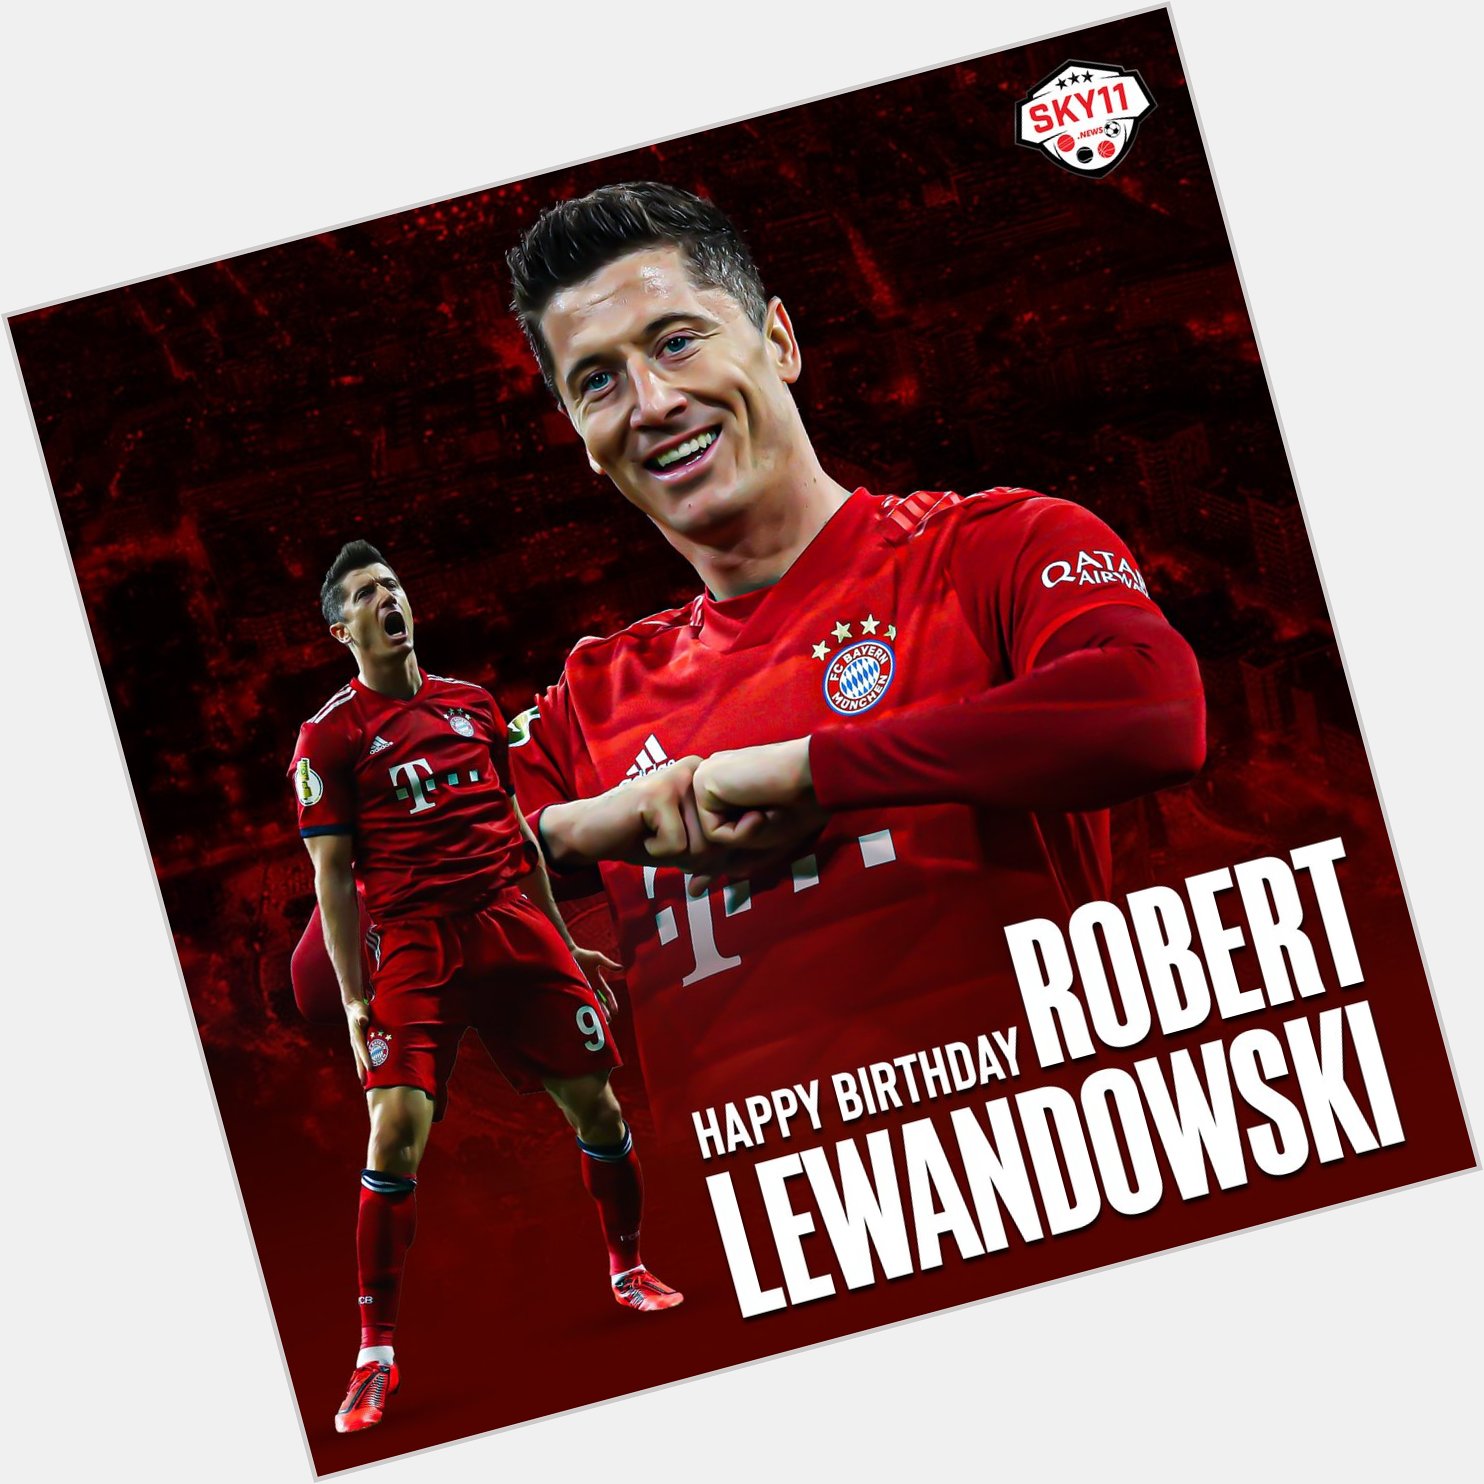 Happy Birthday to the Goal Machine, Robert Lewandowski.      